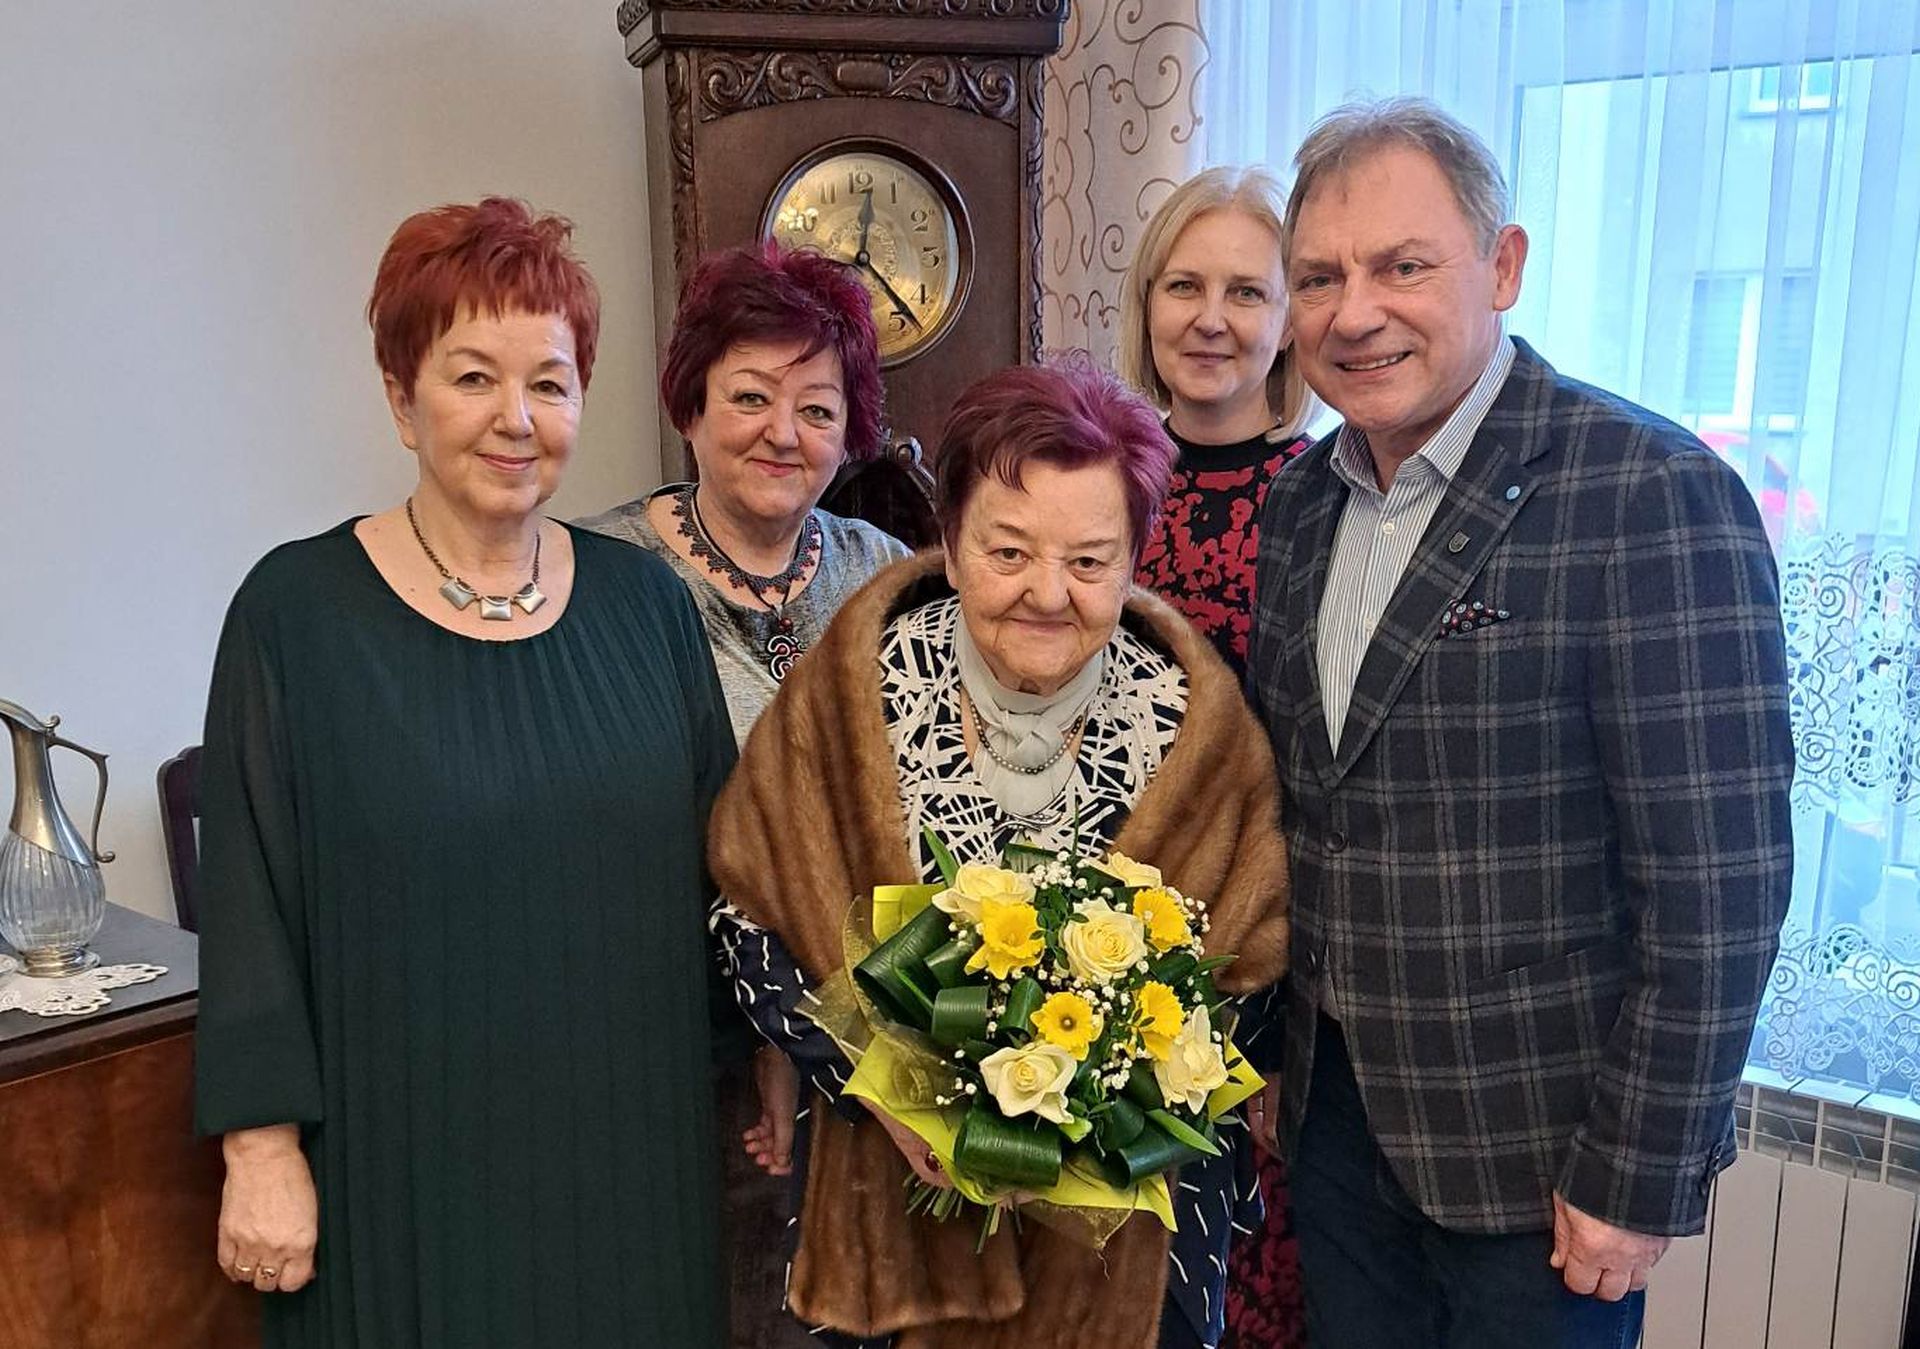 Na zdjęciu: Burmistrz Wiesław Janiszewski, Pełnomocnik Aleksandra Chudzik oraz Jubilatka Aniela Szyp z rodziną